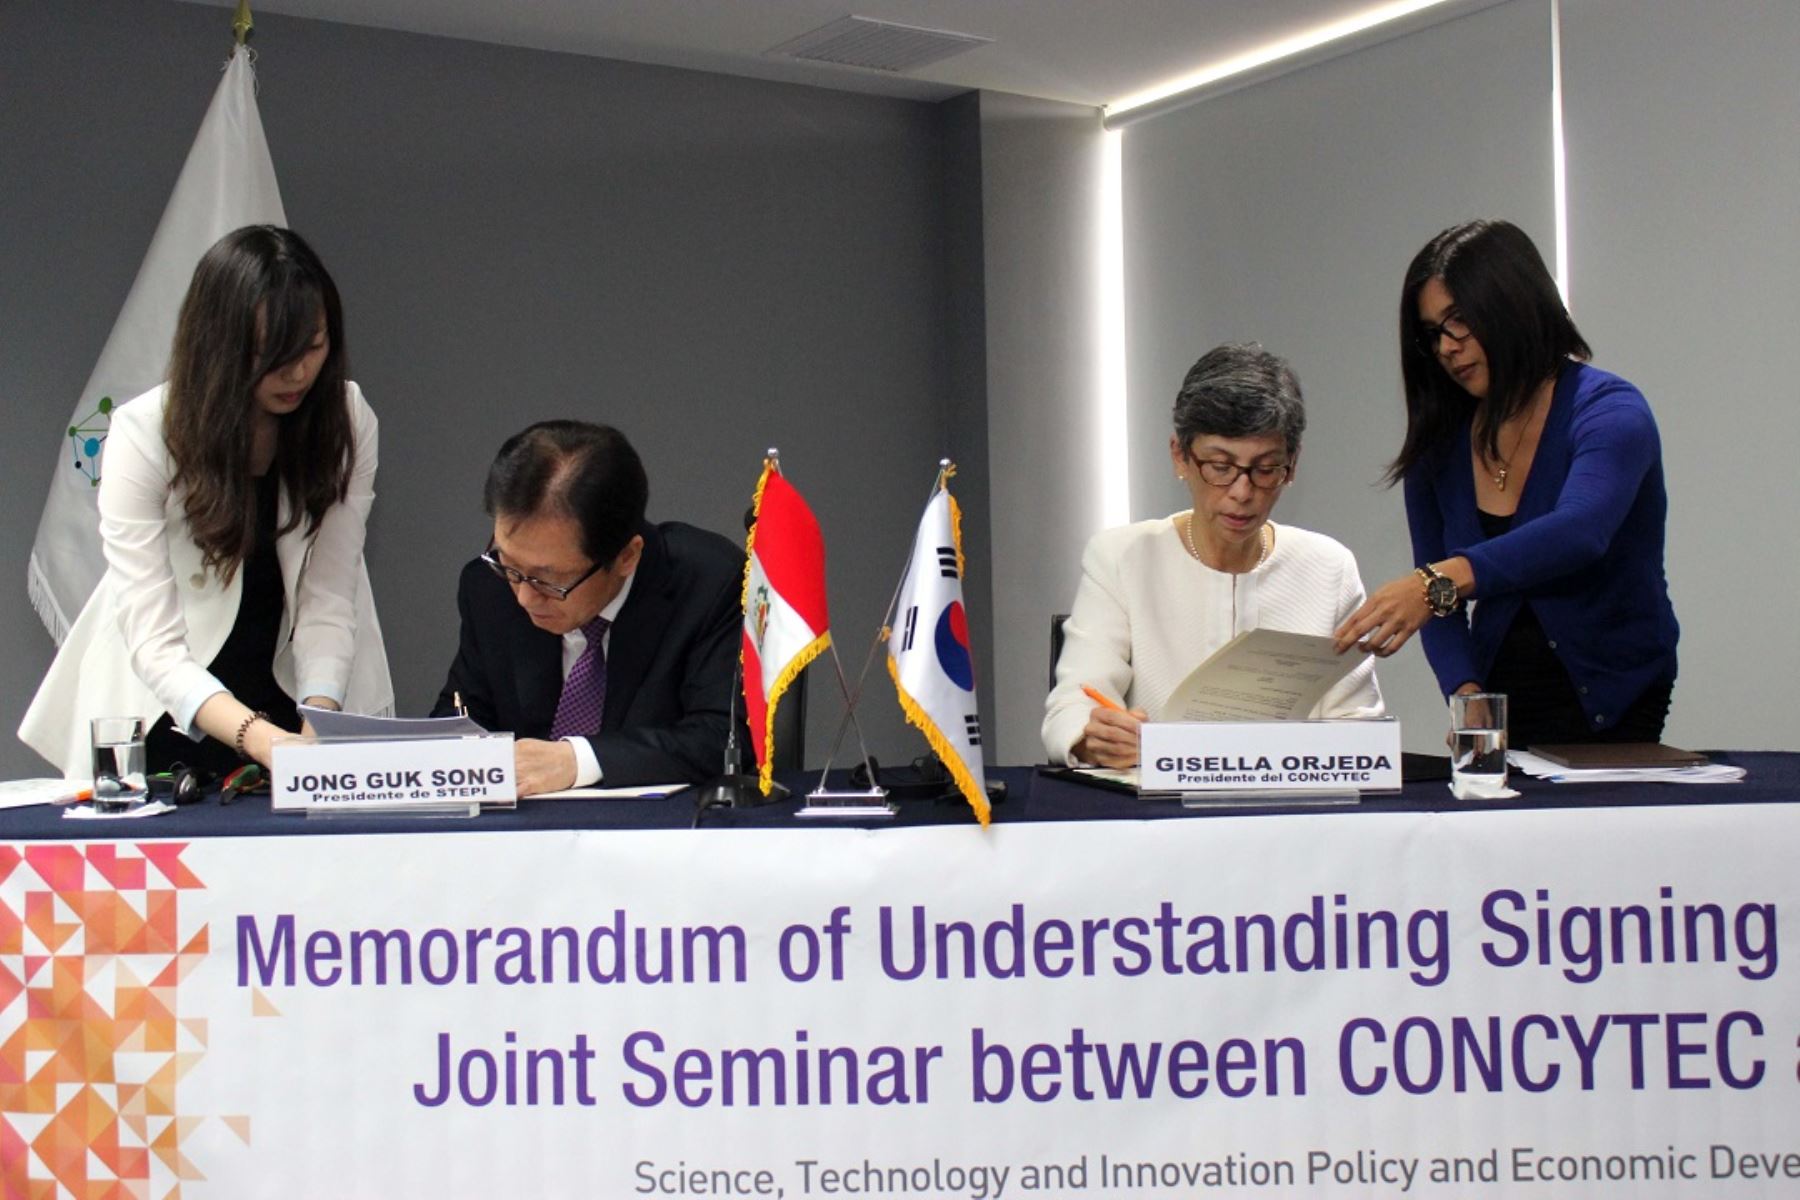 Memorandum de entendimiento suscrito entre Concytec y STEPI de Corea permitirá mejorar capacidad para elaborar políticas públicas en ciencia, tecnología e innovación en el Perú.